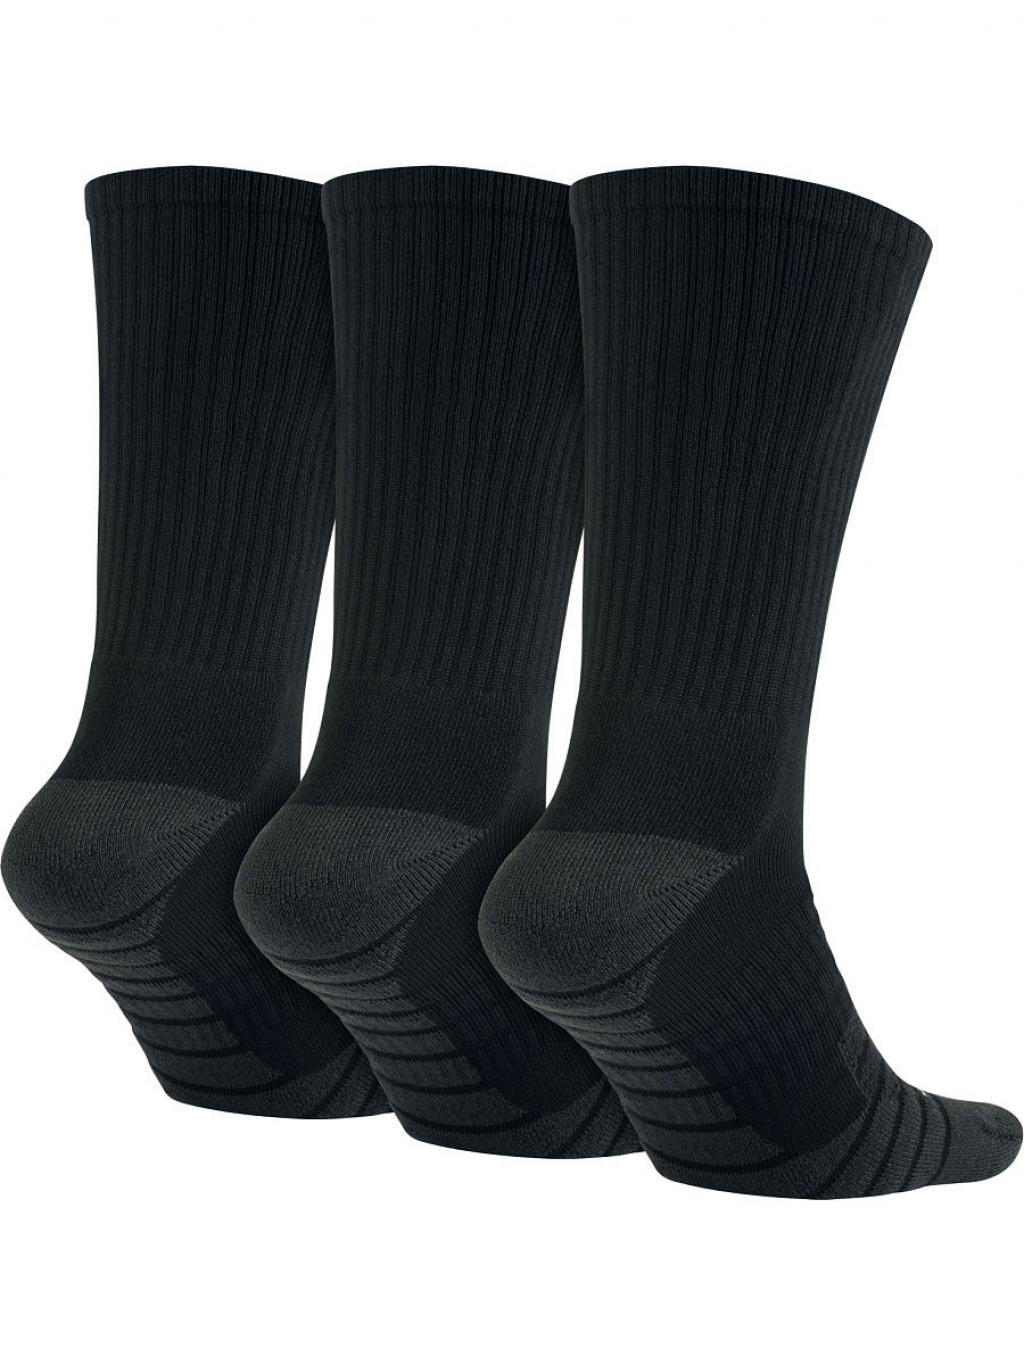 Тренировочные носки 3 пары Nike Dry Cushion 3 Pack Training Socks